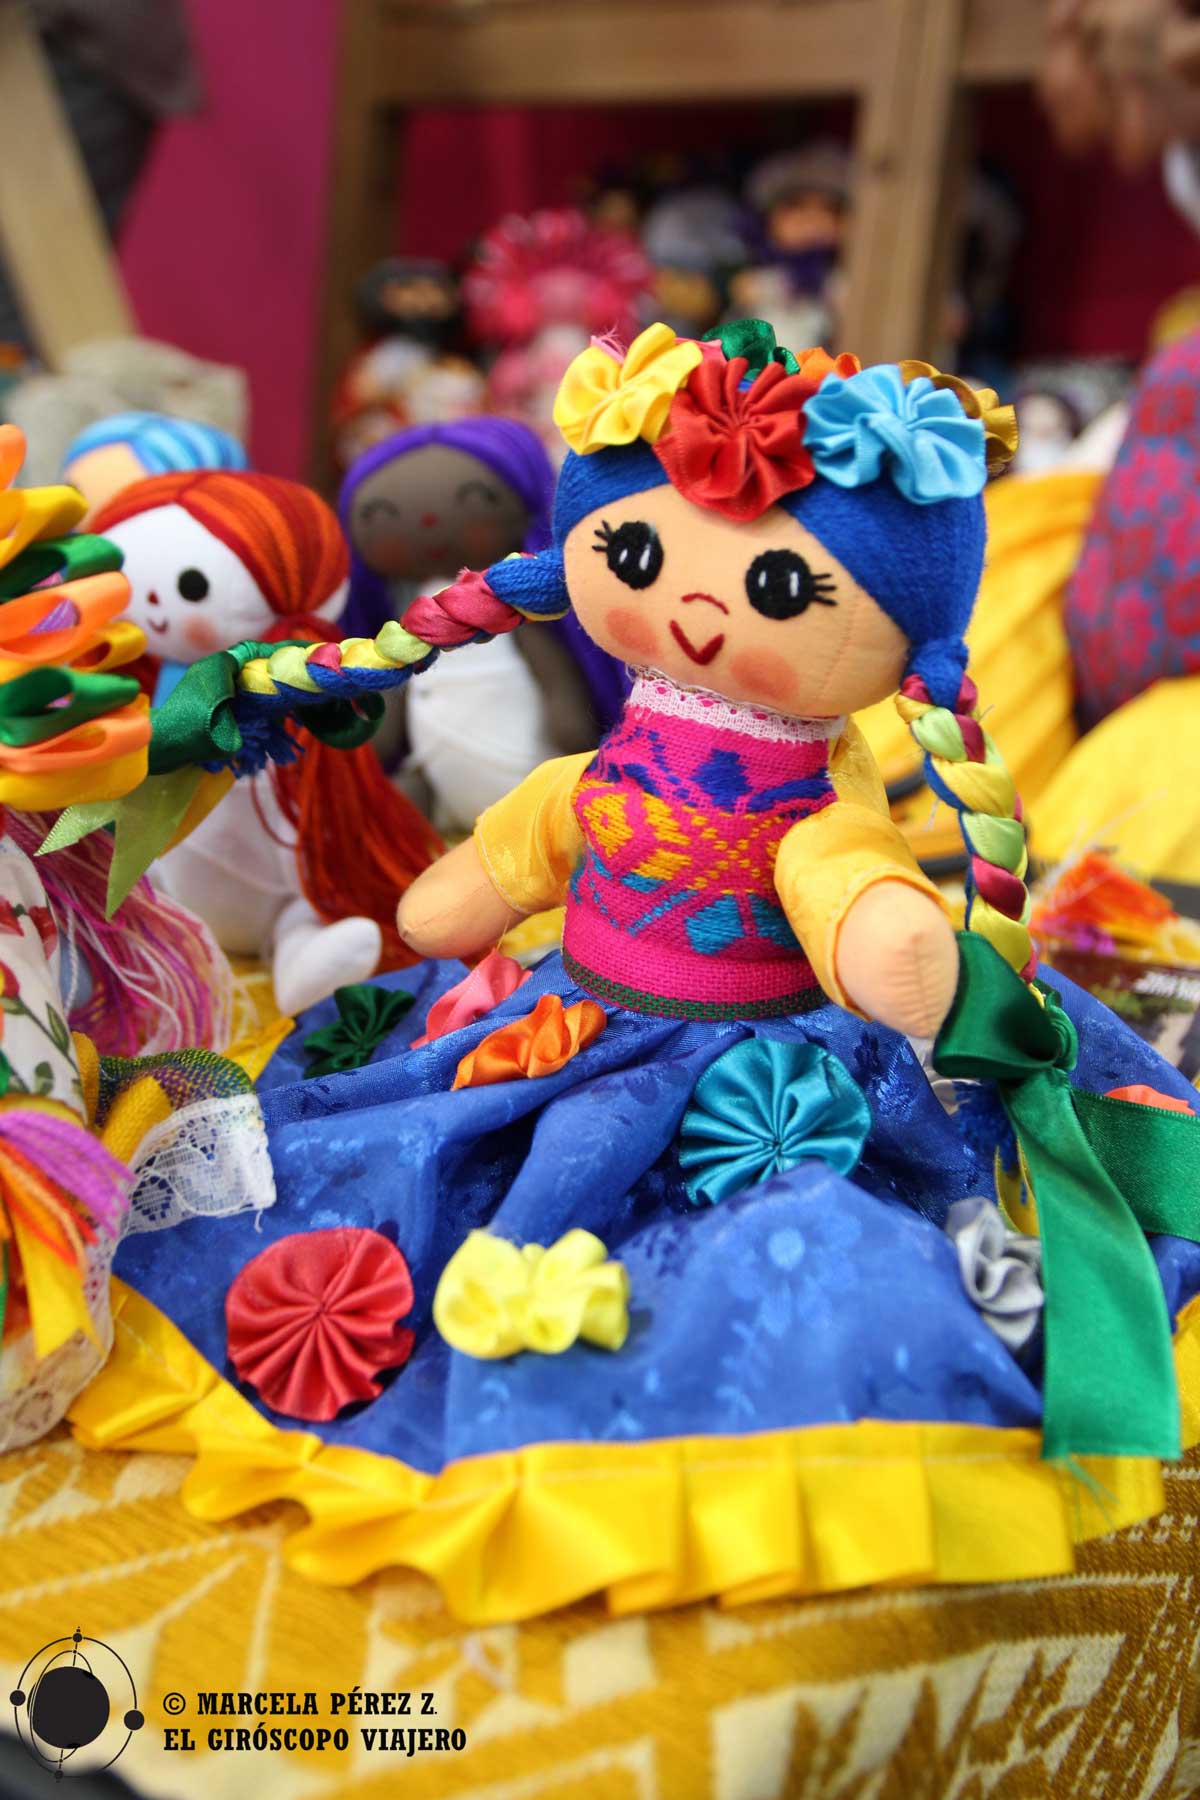 Muñecas de Amealco (estado de Querétaro), una de las artesanías más famosas de México